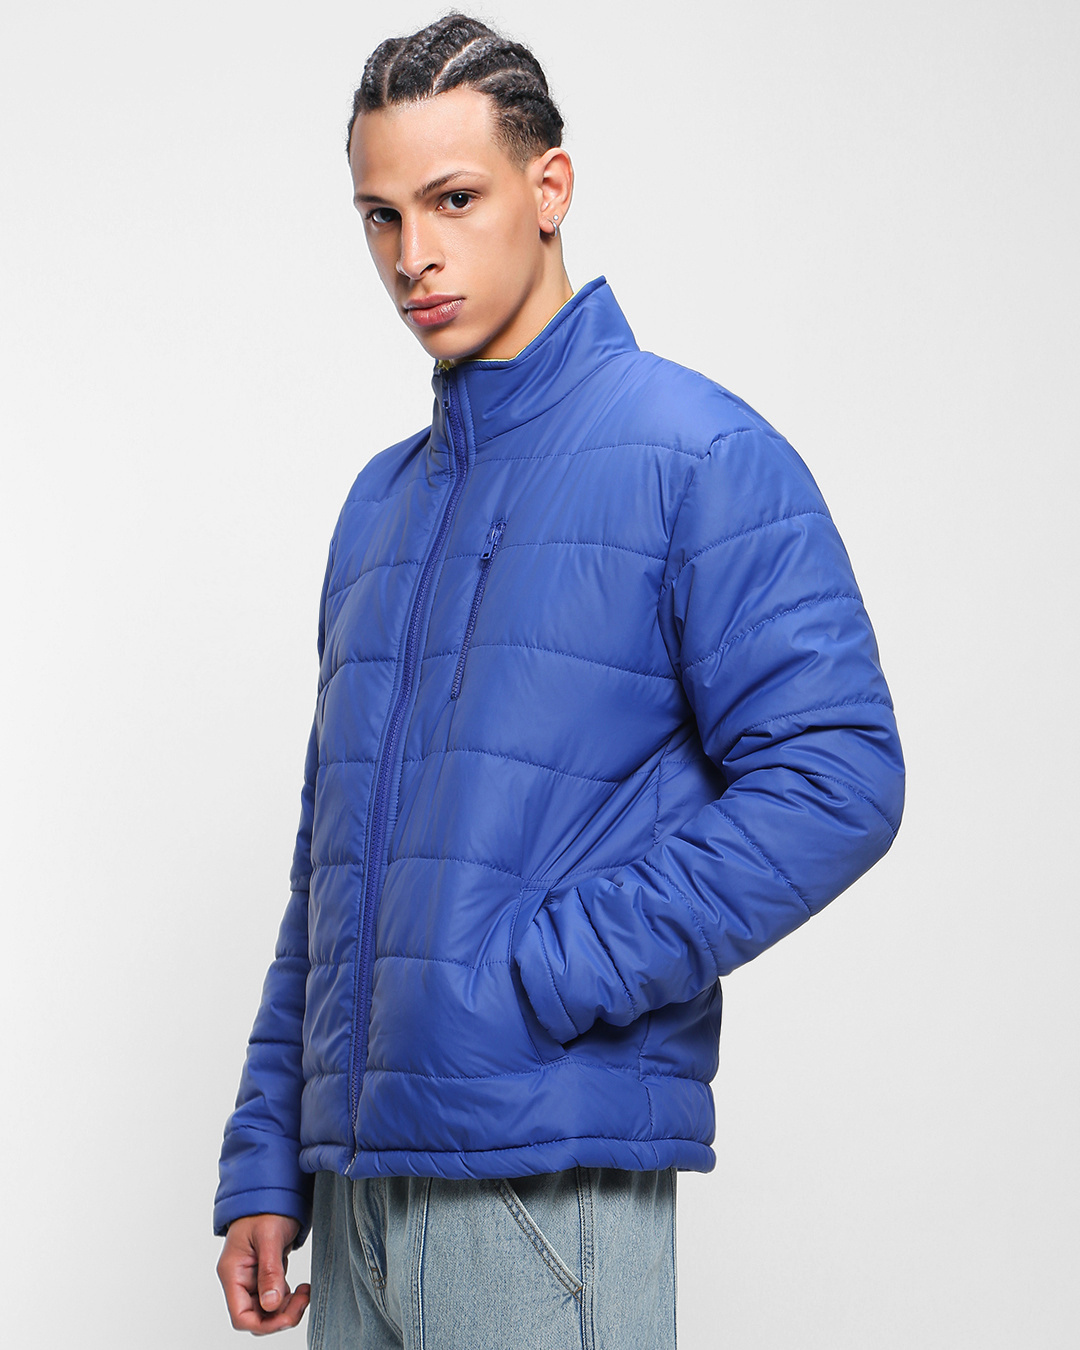 Buy Men's Blue Oversized Puffer Jacket Online at Bewakoof